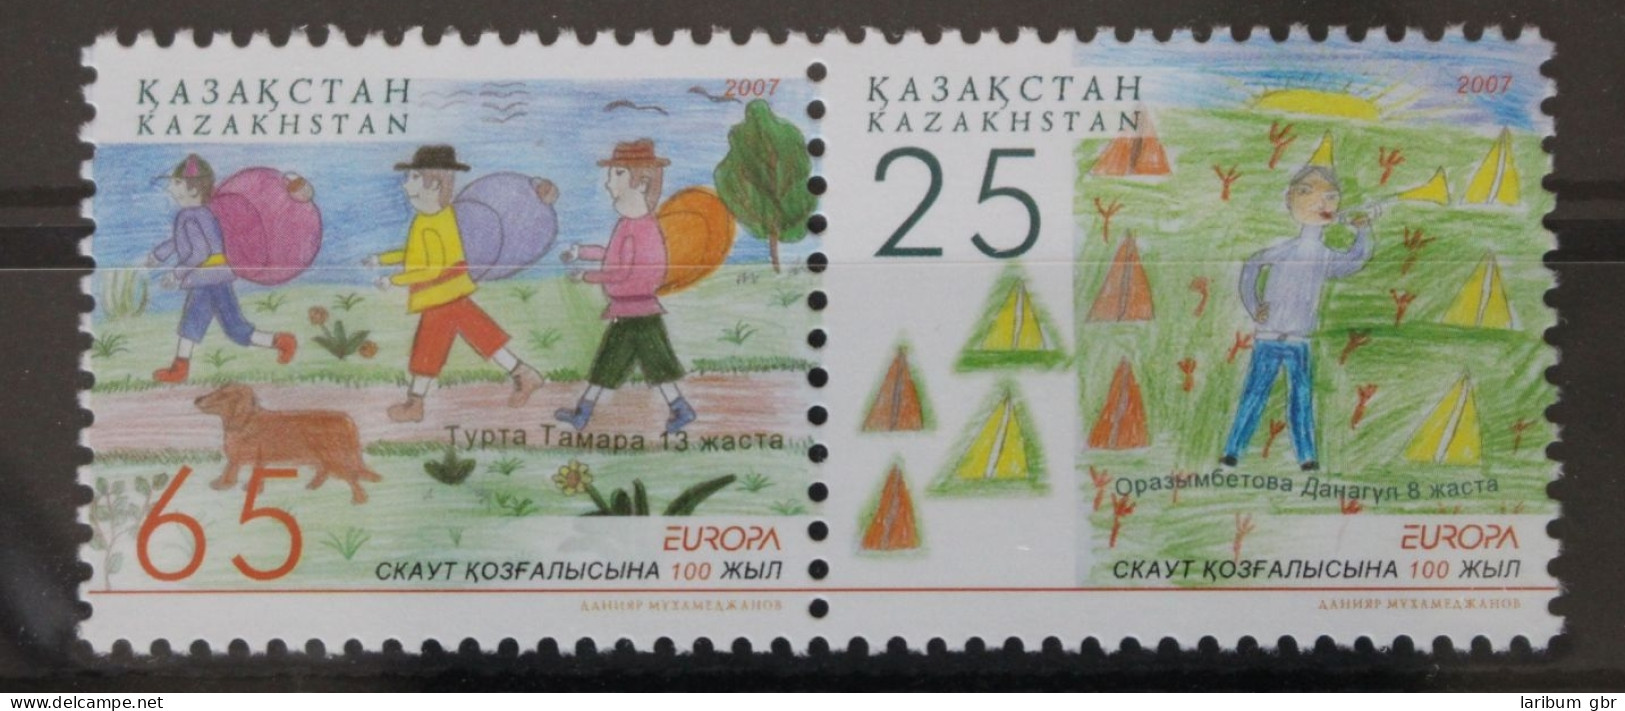 Kasachstan 580-581 Postfrisch Europa Pfadfinder #WL507 - Kazakhstan